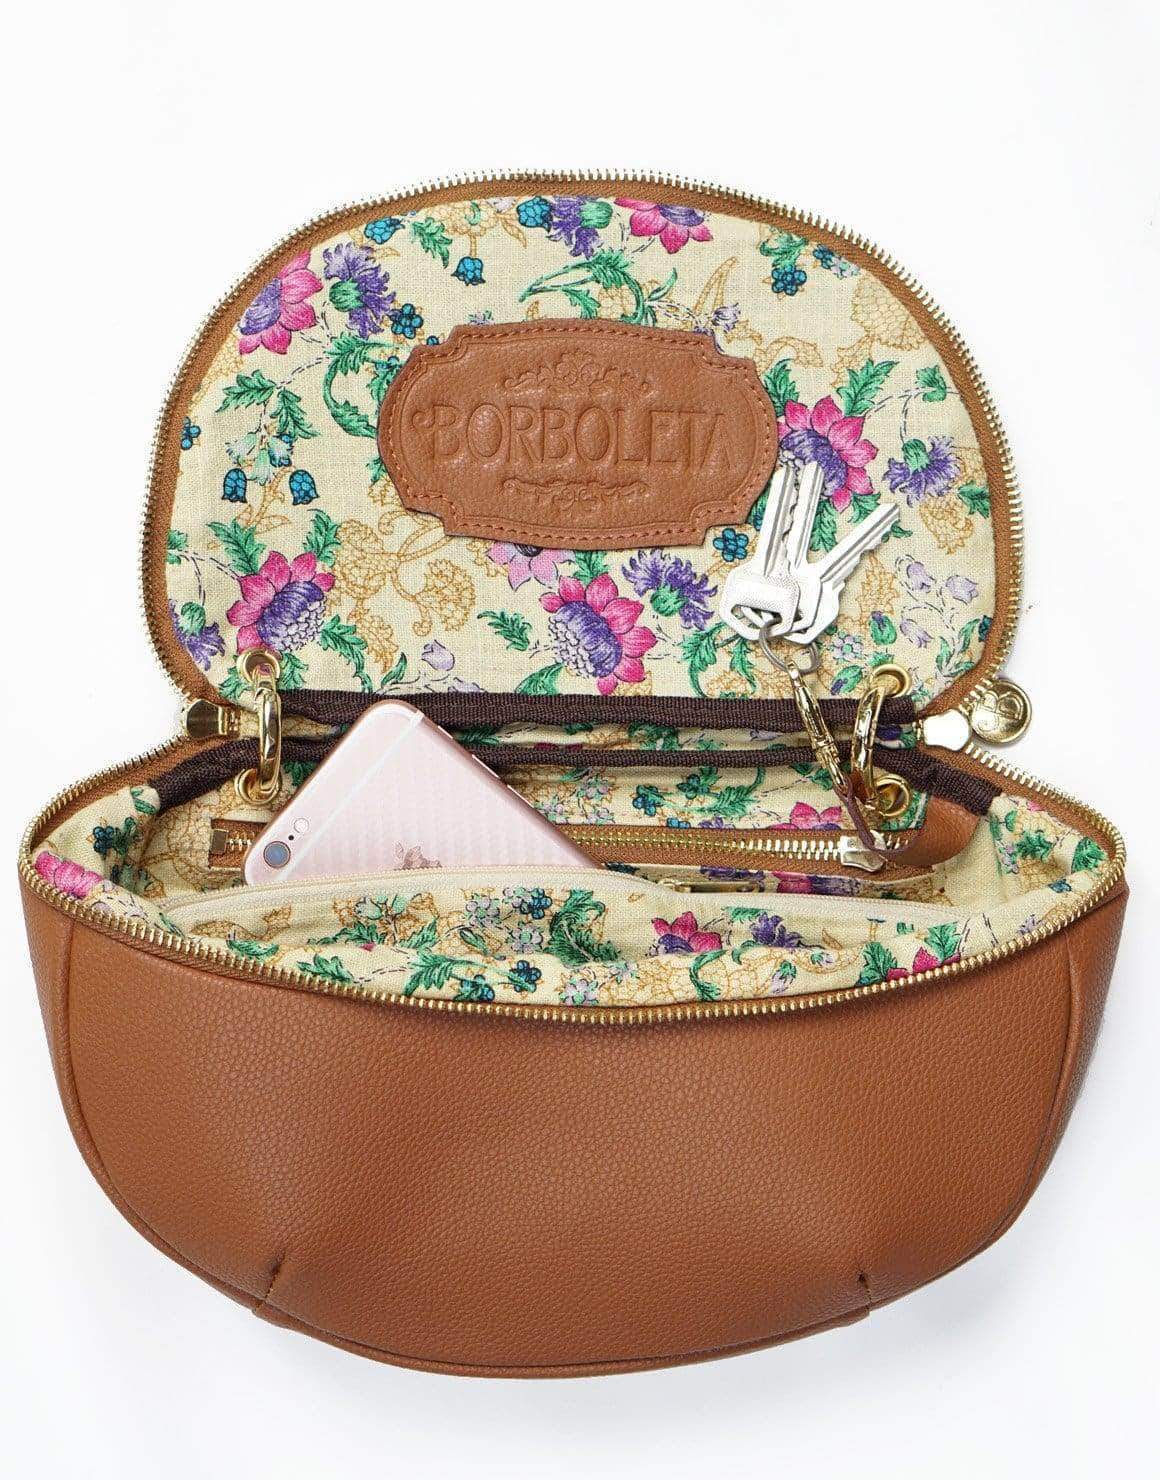 Mini Lunette Bag by Borboleta